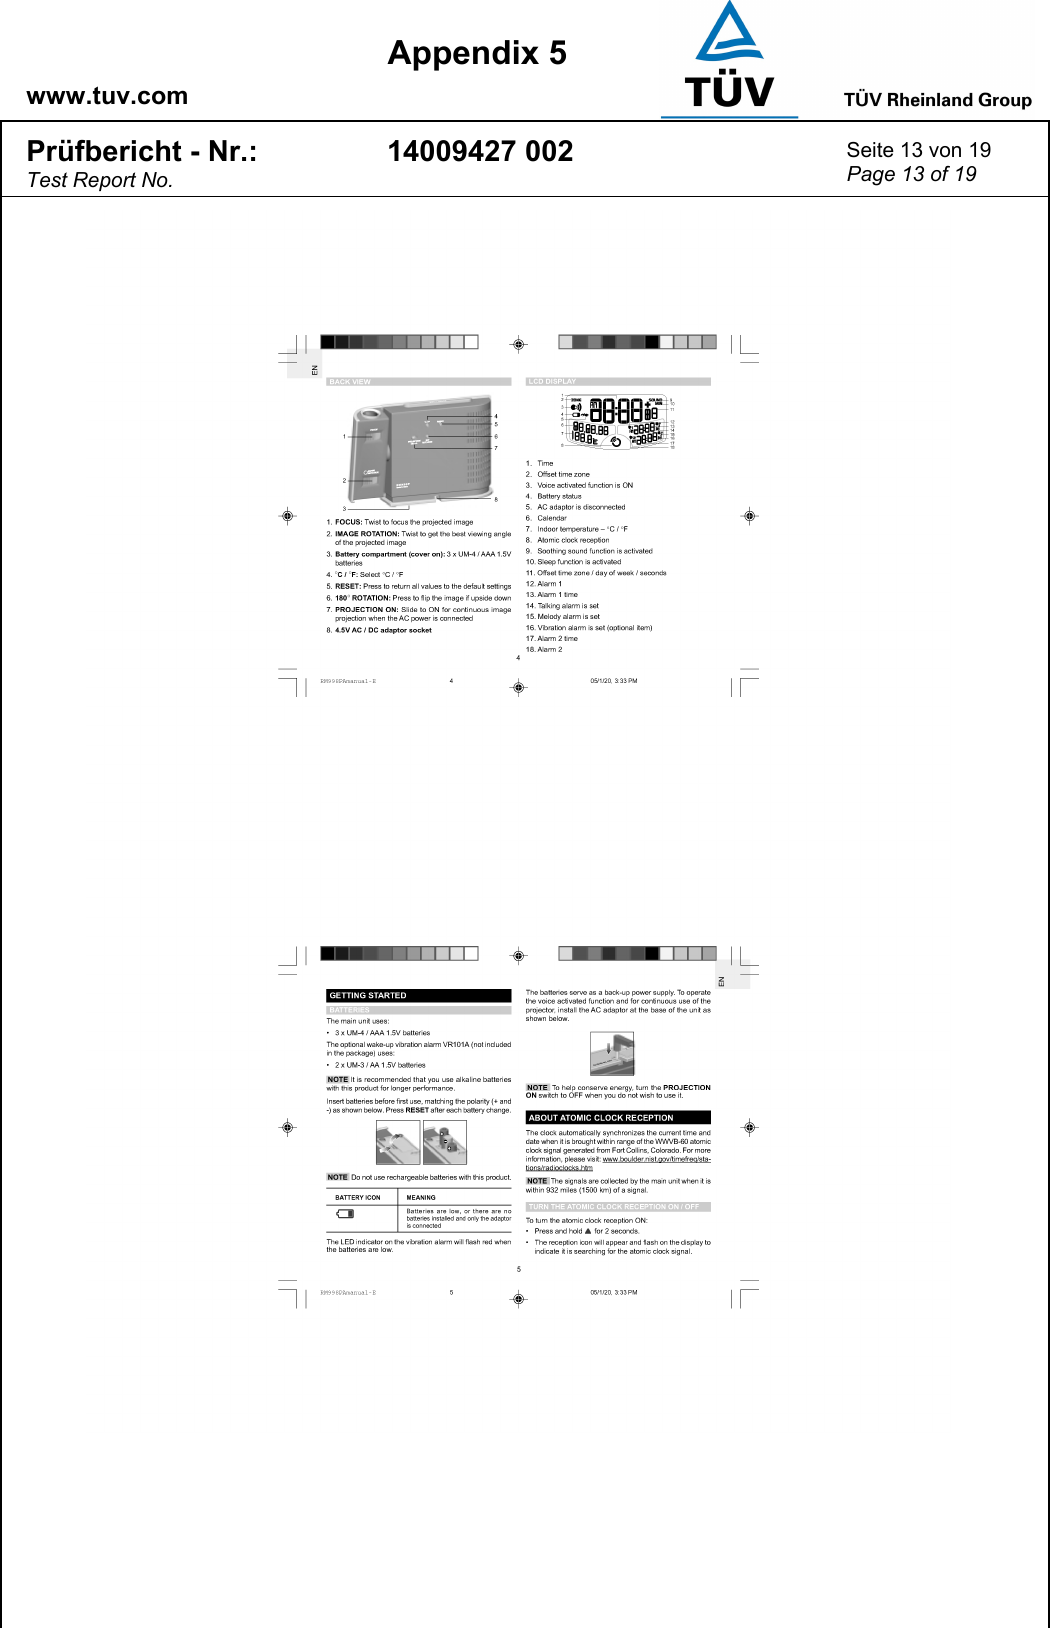    www.tuv.com  Appendix 5 Prüfbericht - Nr.: Test Report No. 14009427 002  Seite 13 von 19 Page 13 of 19   